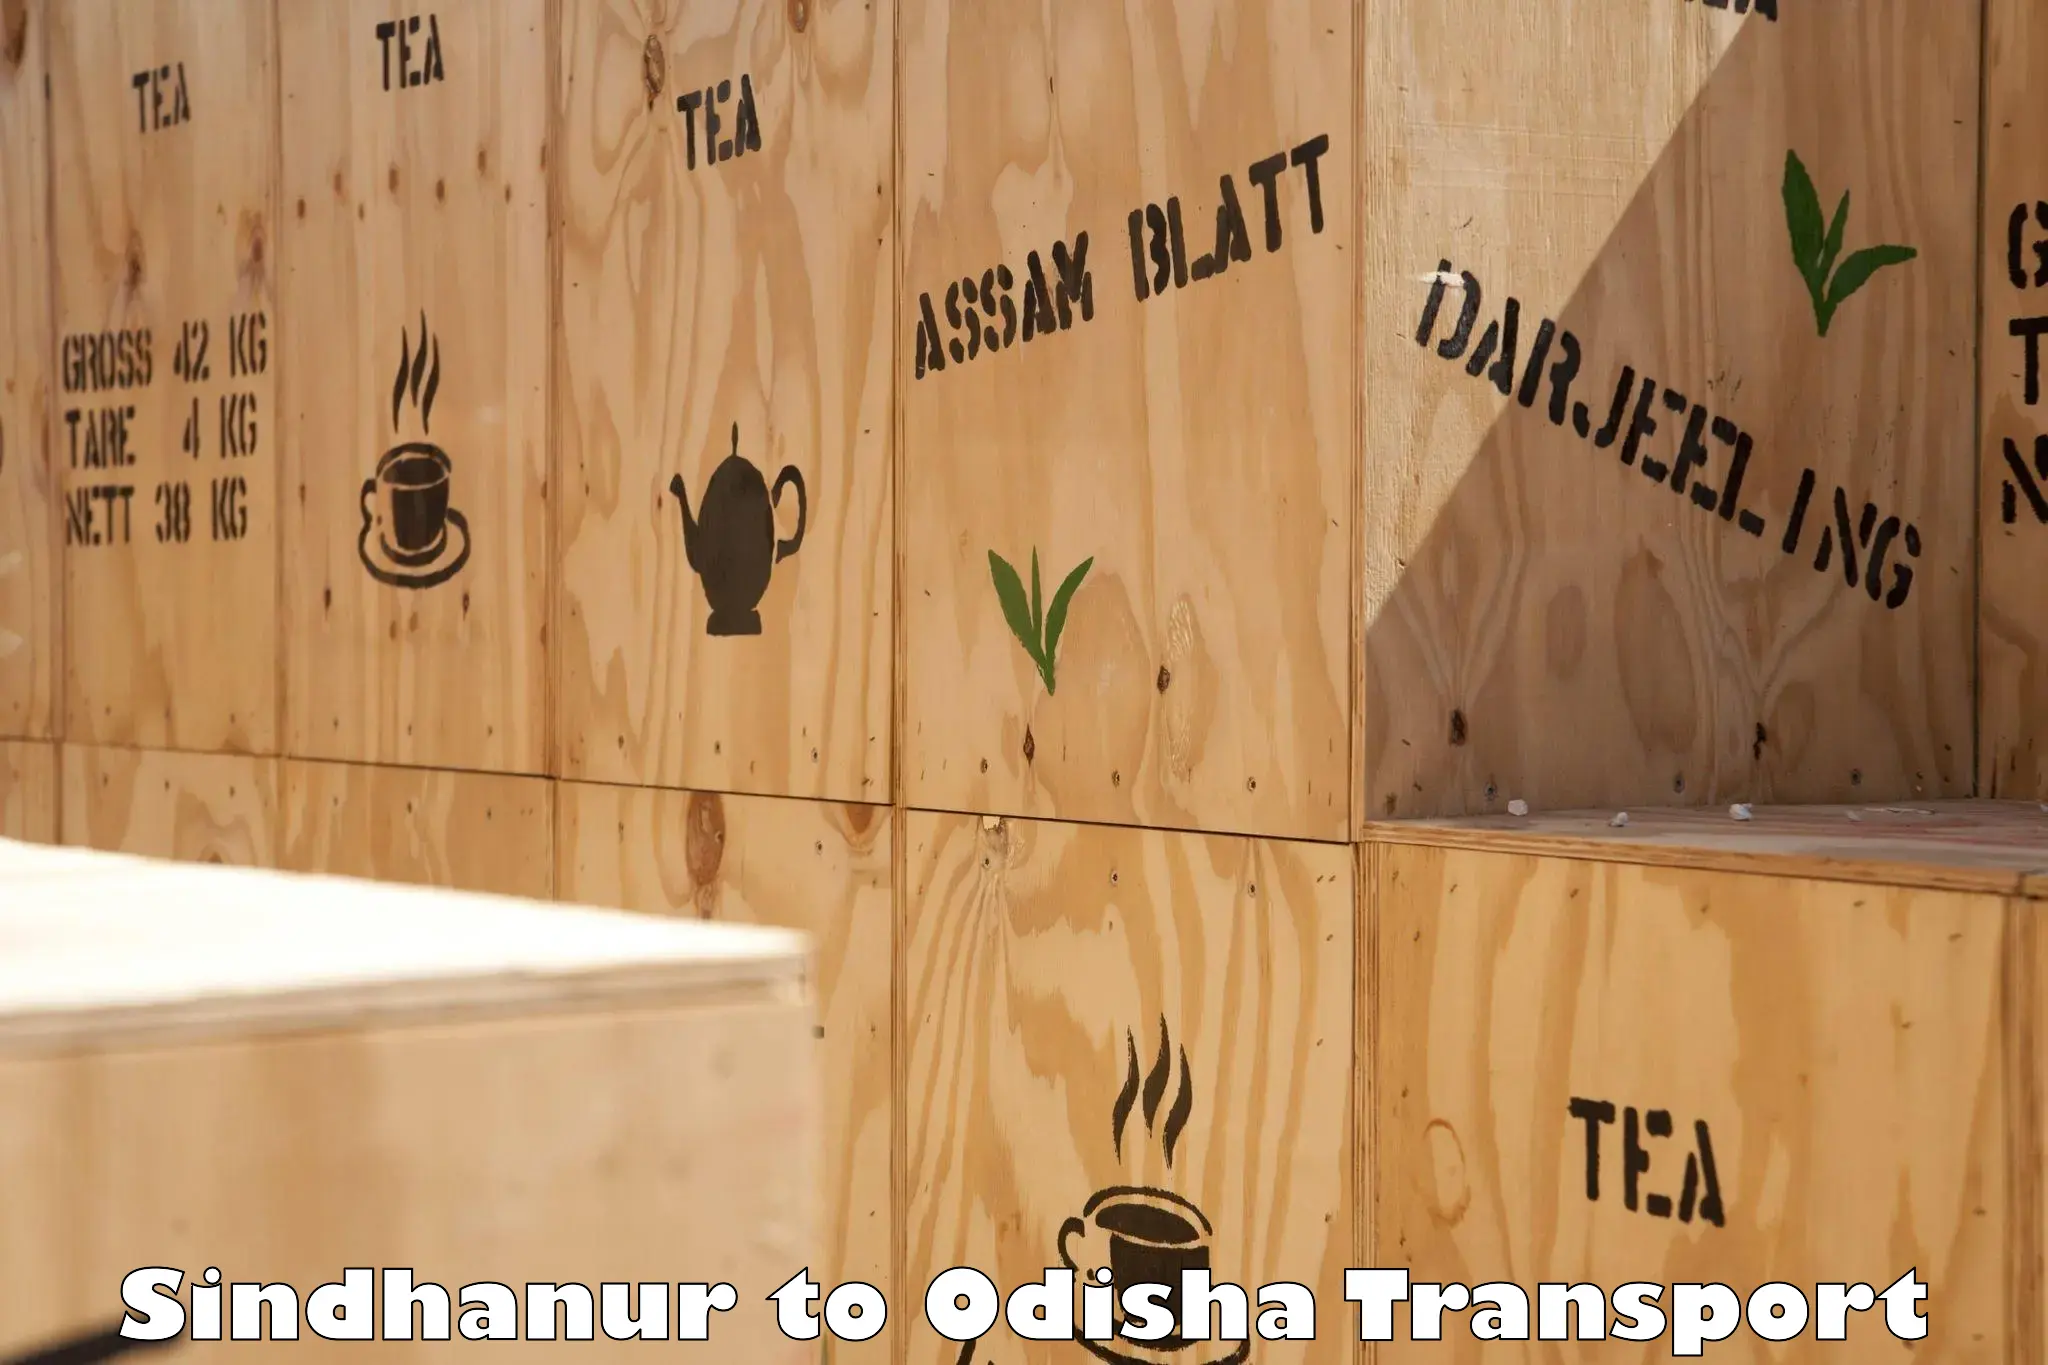 Furniture transport service Sindhanur to Kupari